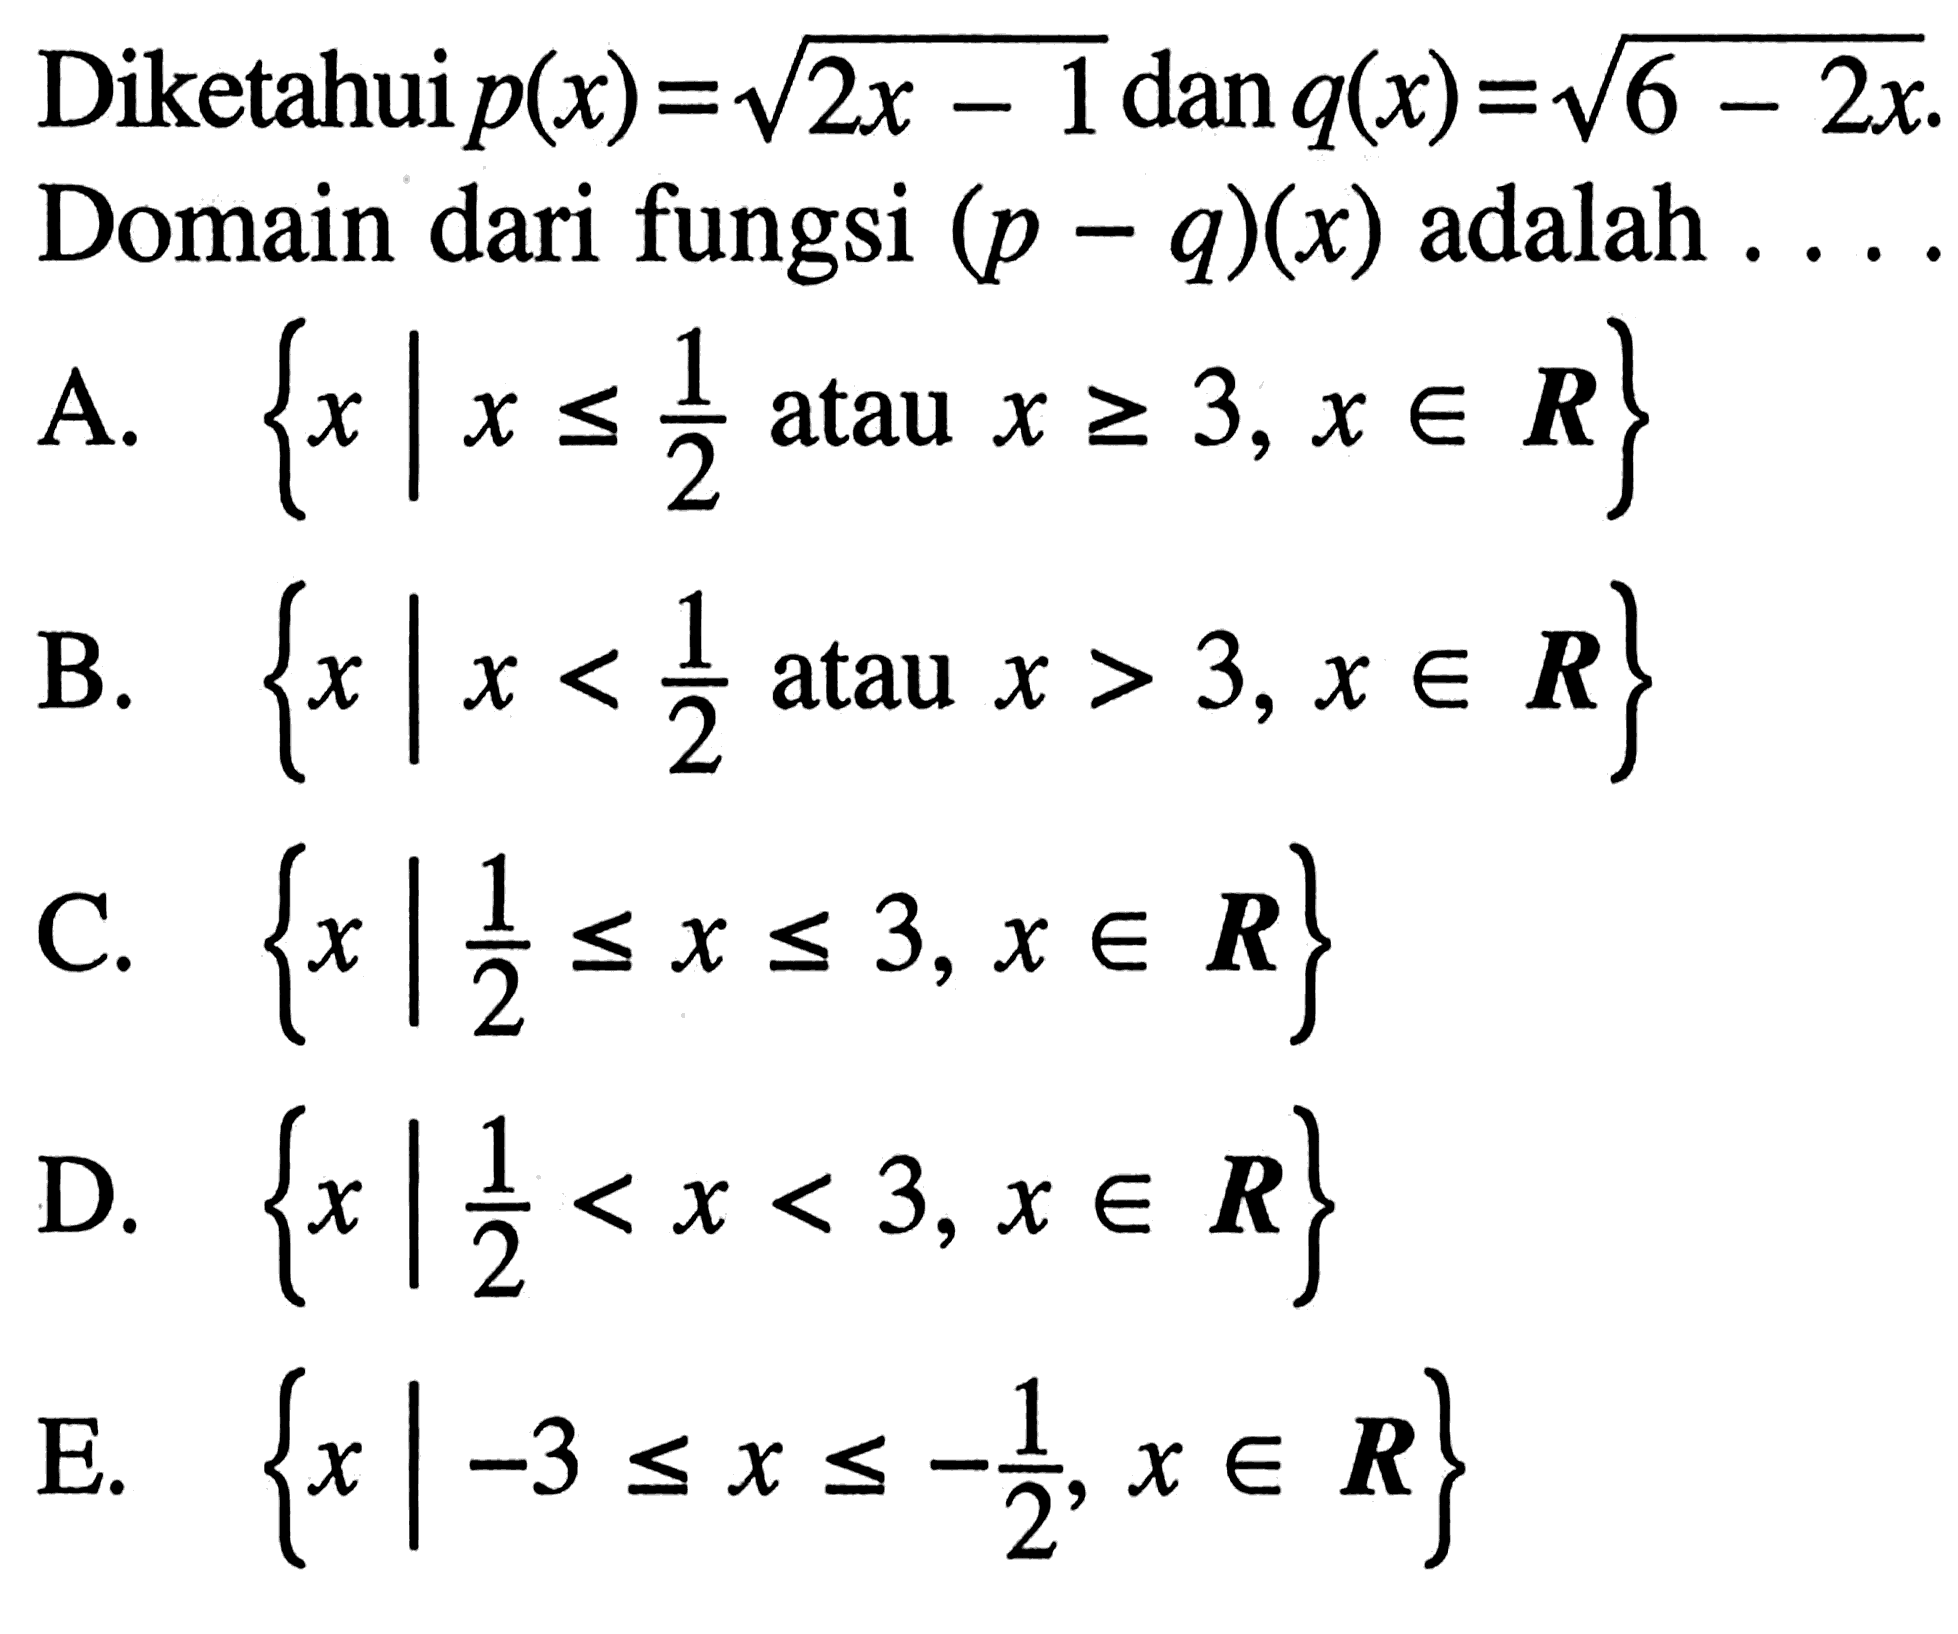 Diketahui  p(x)=akar(2x-1)  dan  q(x)=akar(6-2x) . Domain dari fungsi  (p-q)(x)  adalah ...